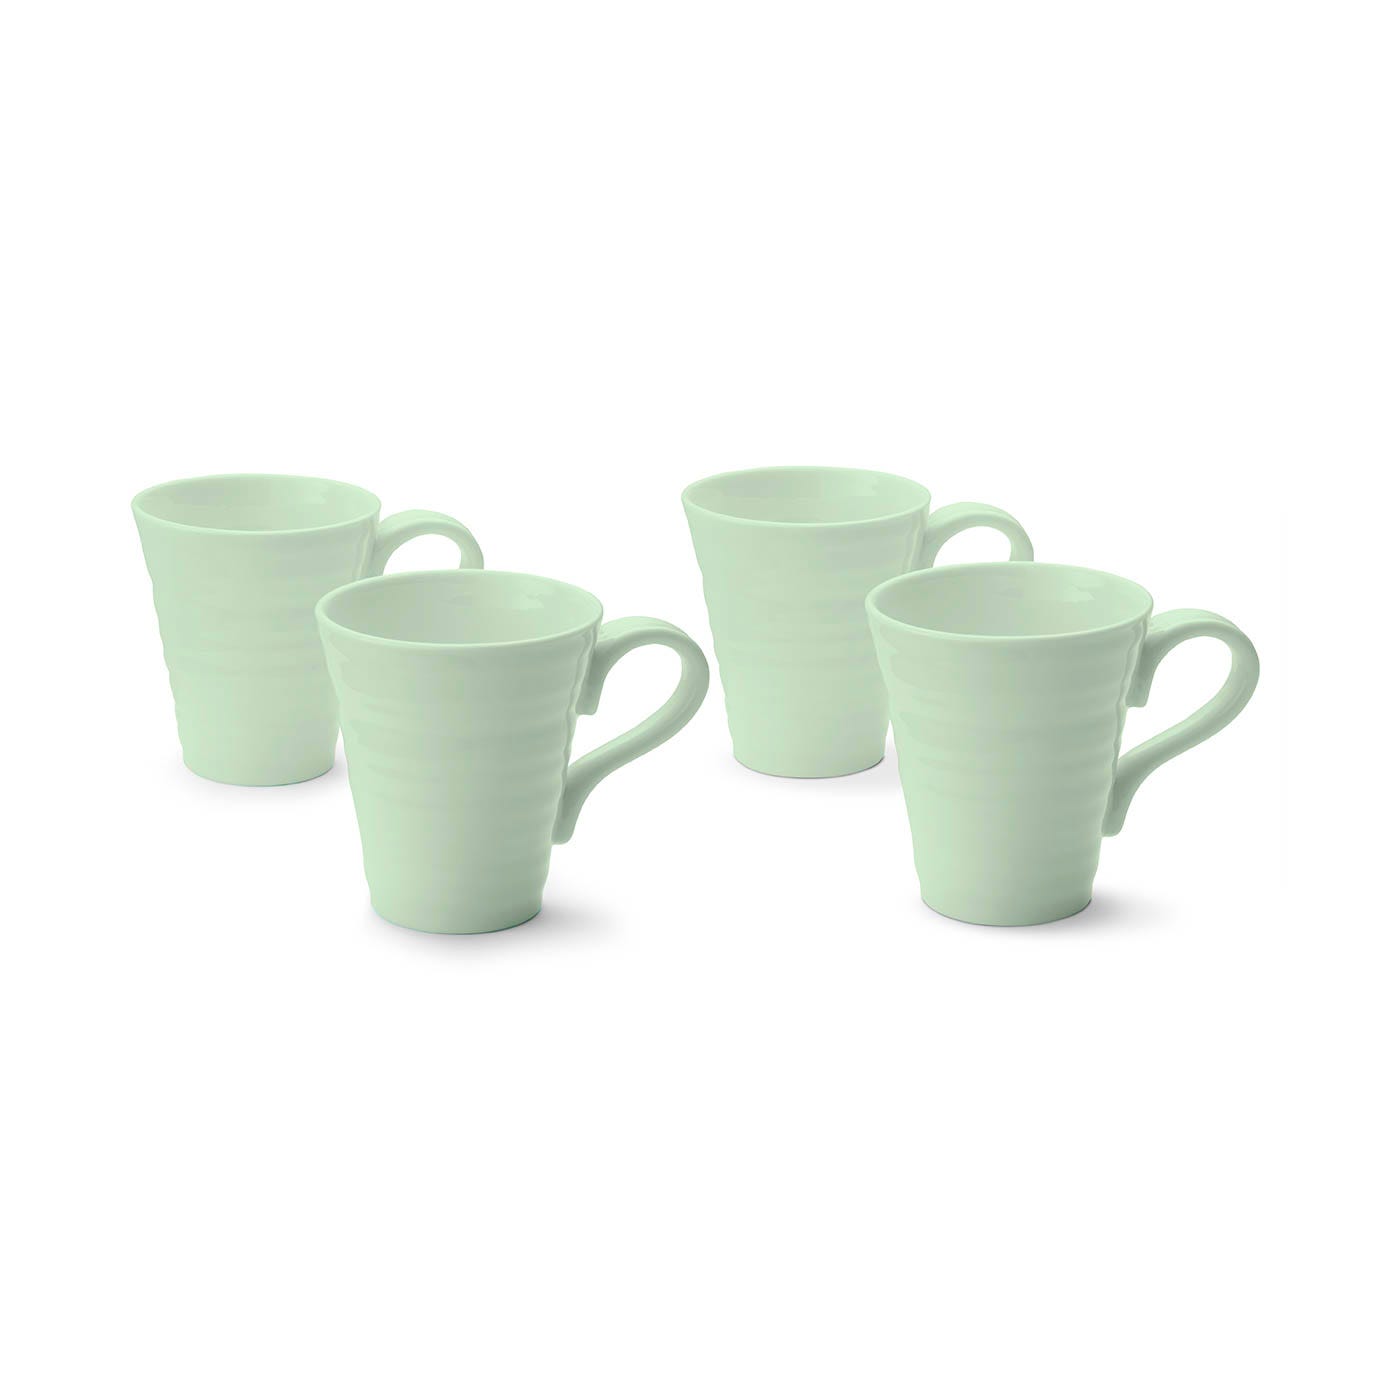 Sophie Conran Celadon Set of 4 Mugs